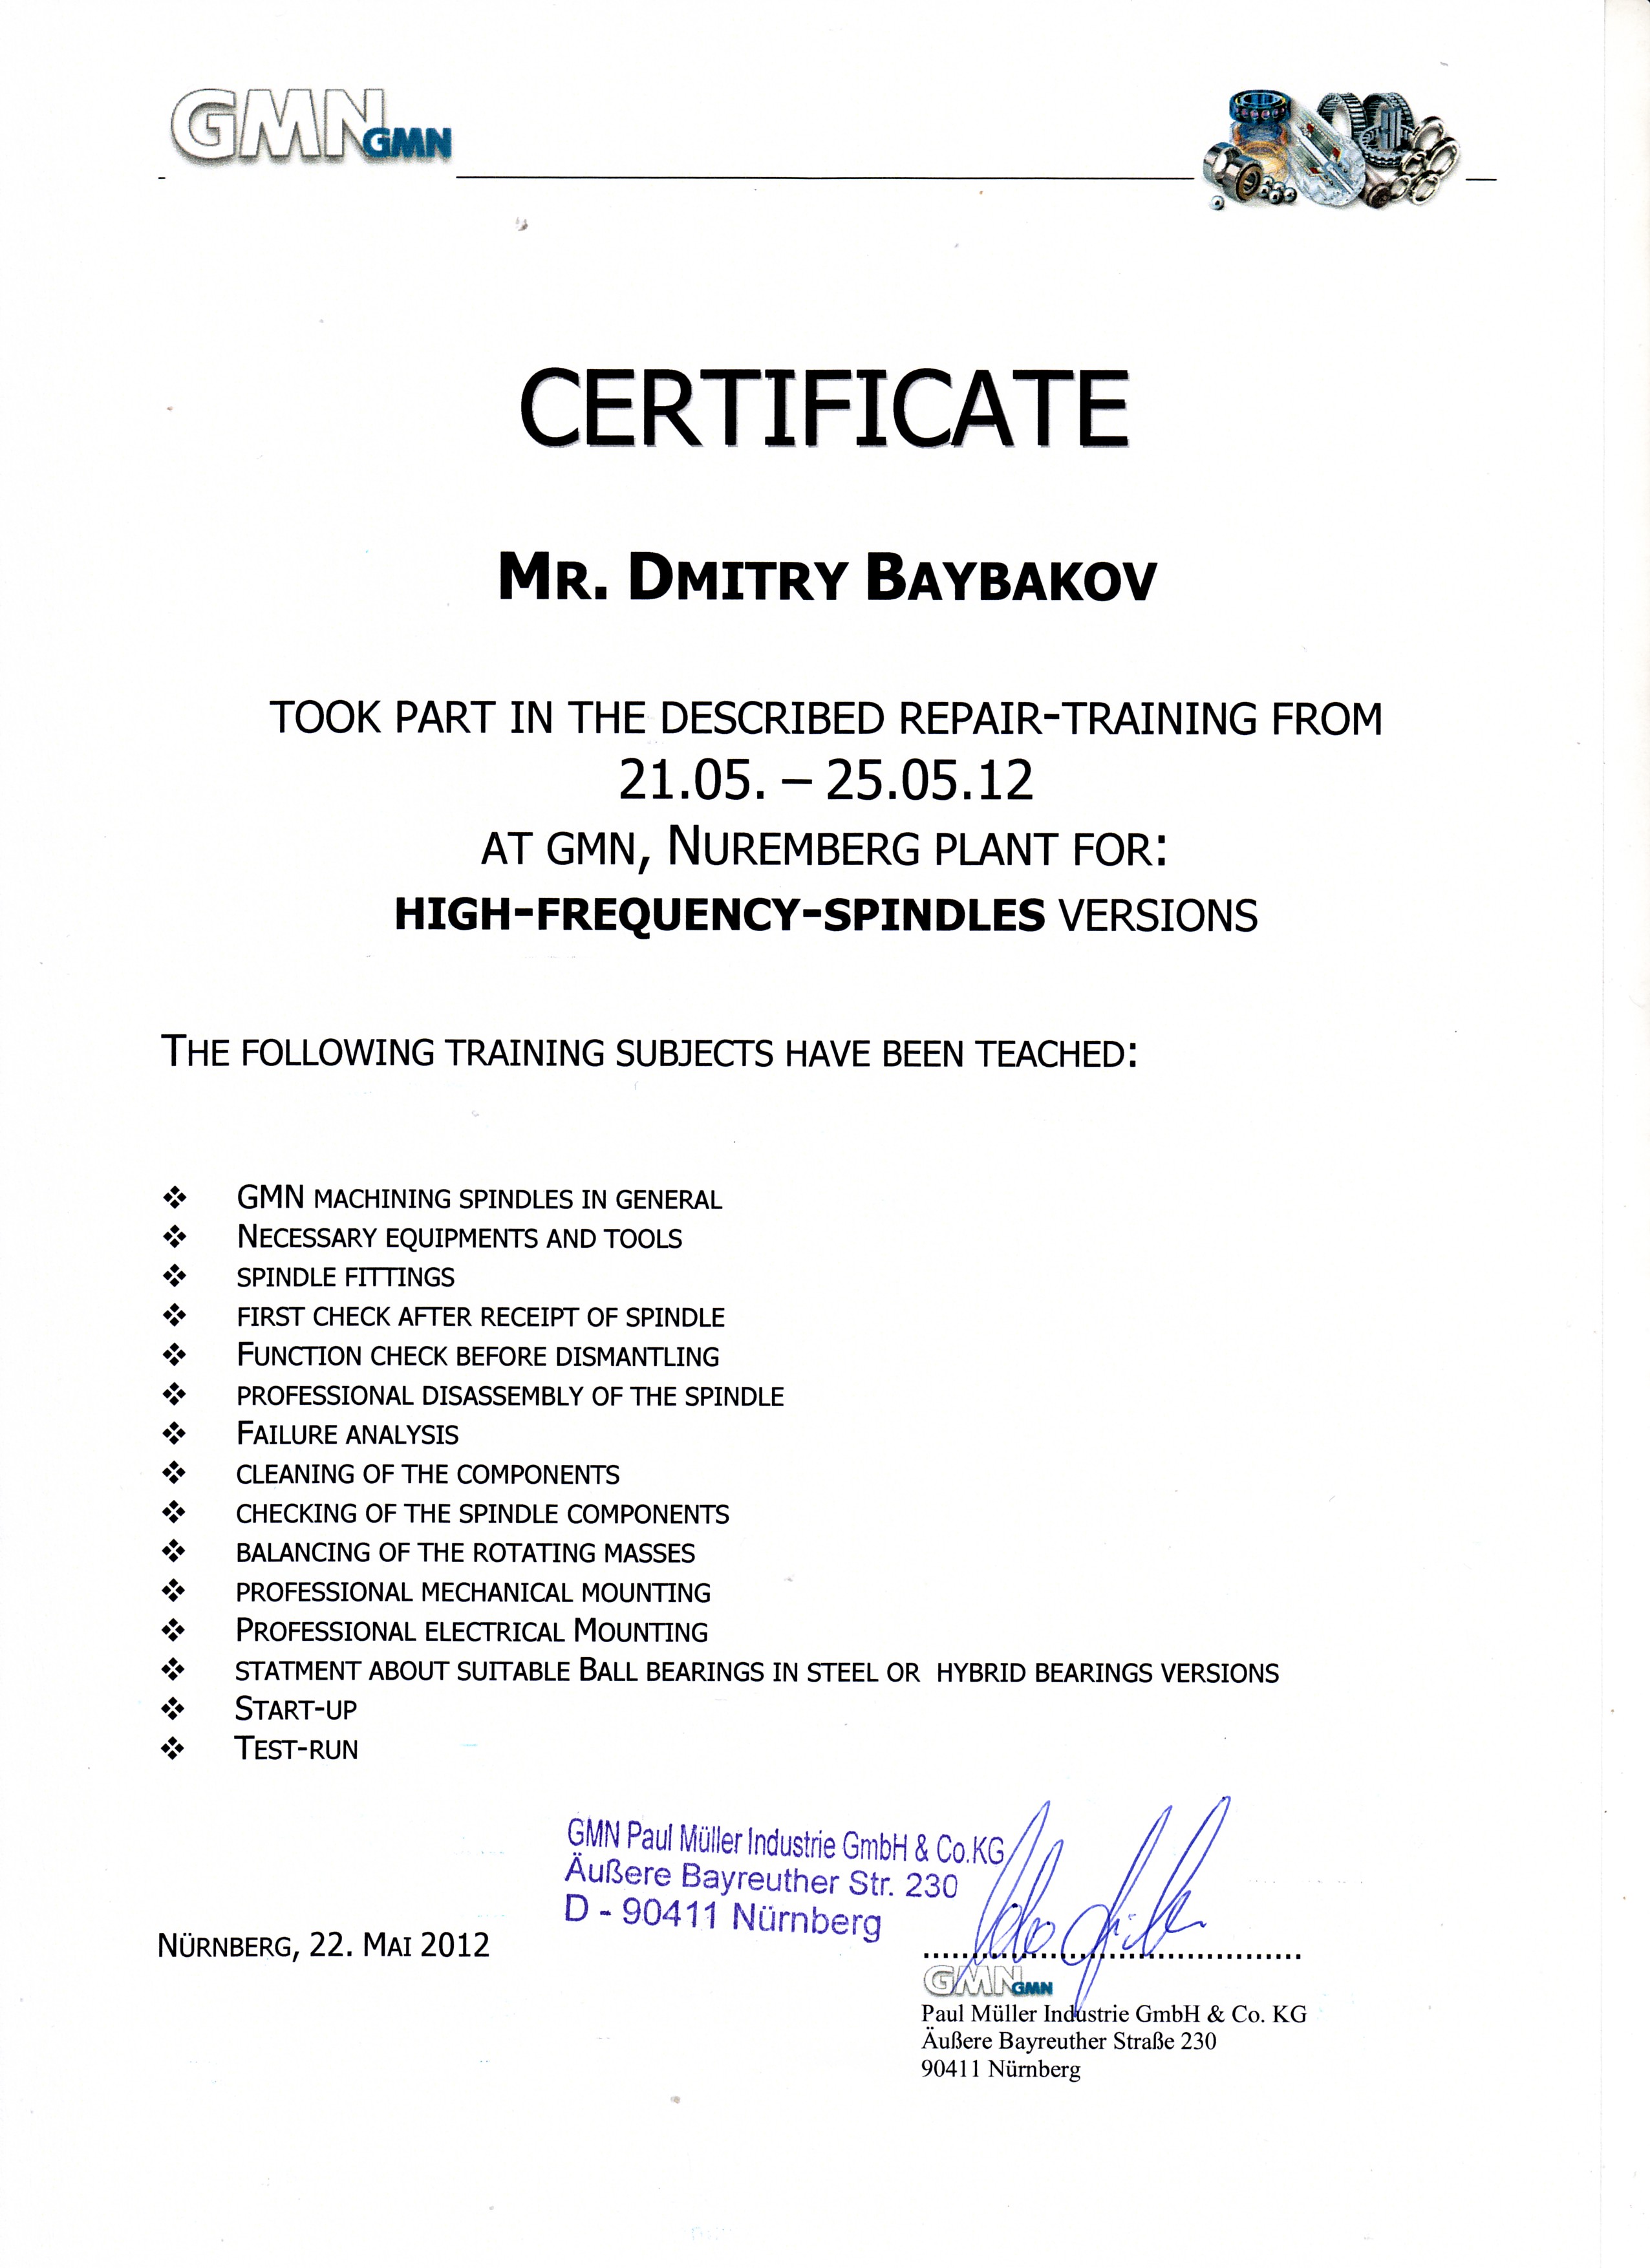 сертификат о прохождении обучения в Германии на заводе GMN Байбаков